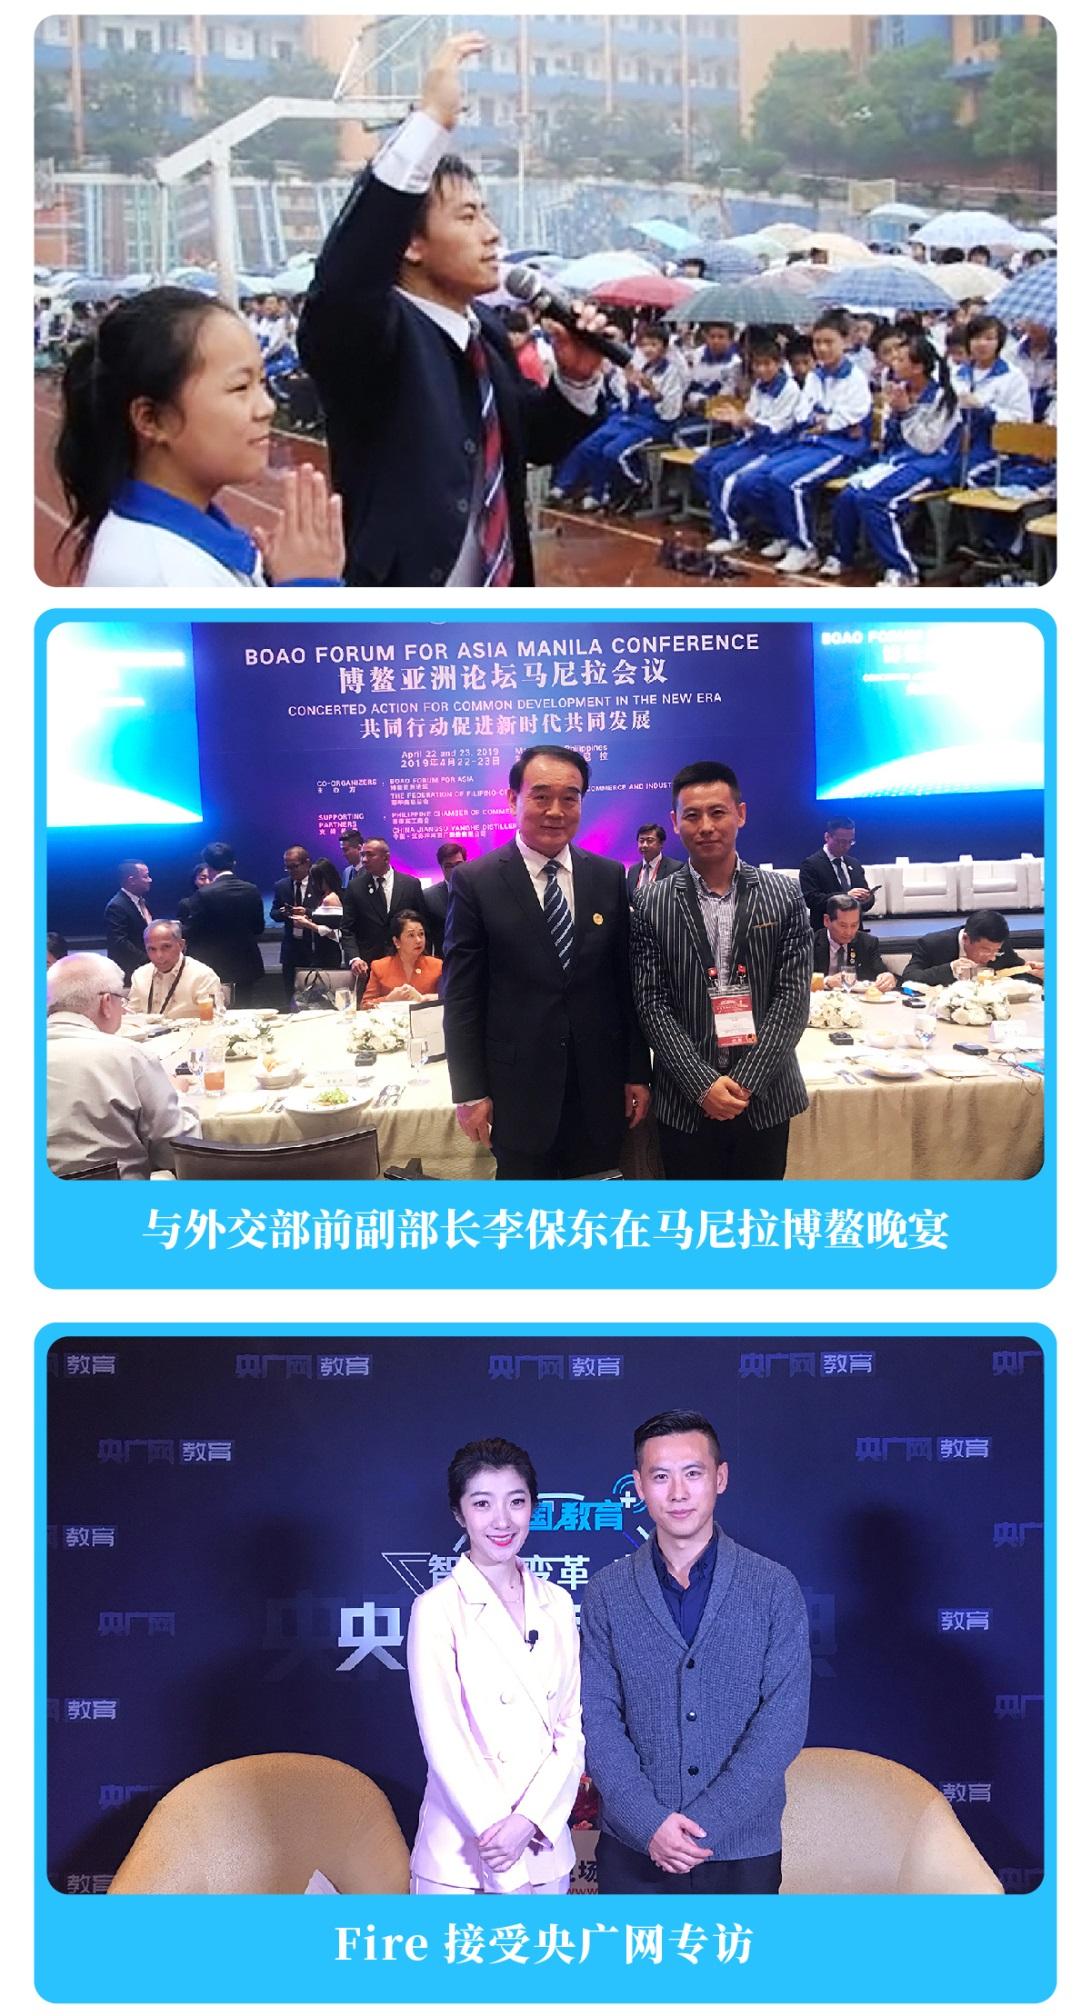 小磁带英语创始人樊利军先生受邀参加清华大学企业家进修学习